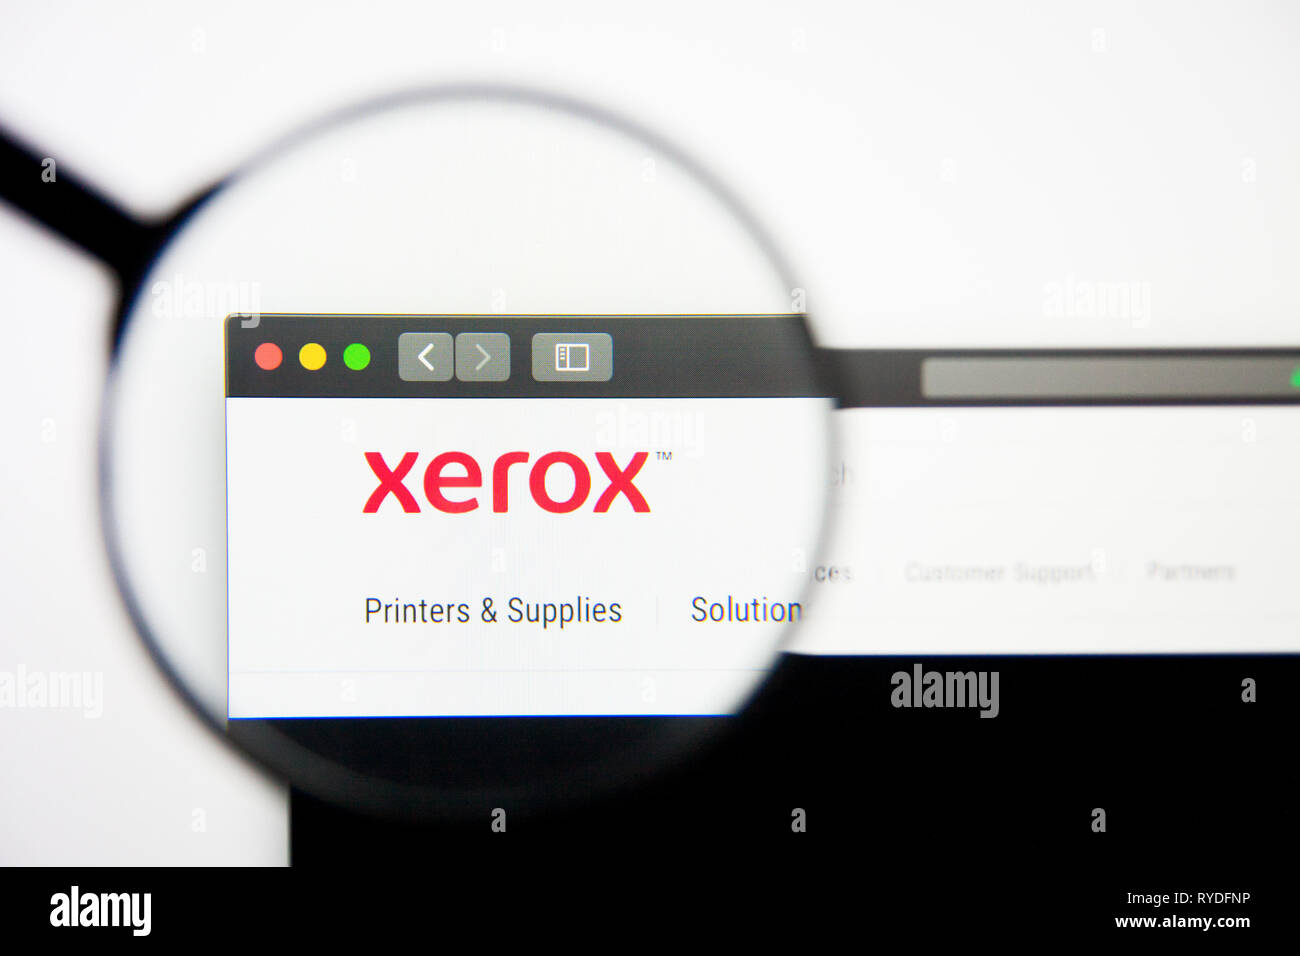 Los Angeles, Californie, USA - 28 Février 2019 : Xerox Page d'accueil du site. Logo xerox visible sur l'écran d'affichage, de rédaction d'illustration Banque D'Images